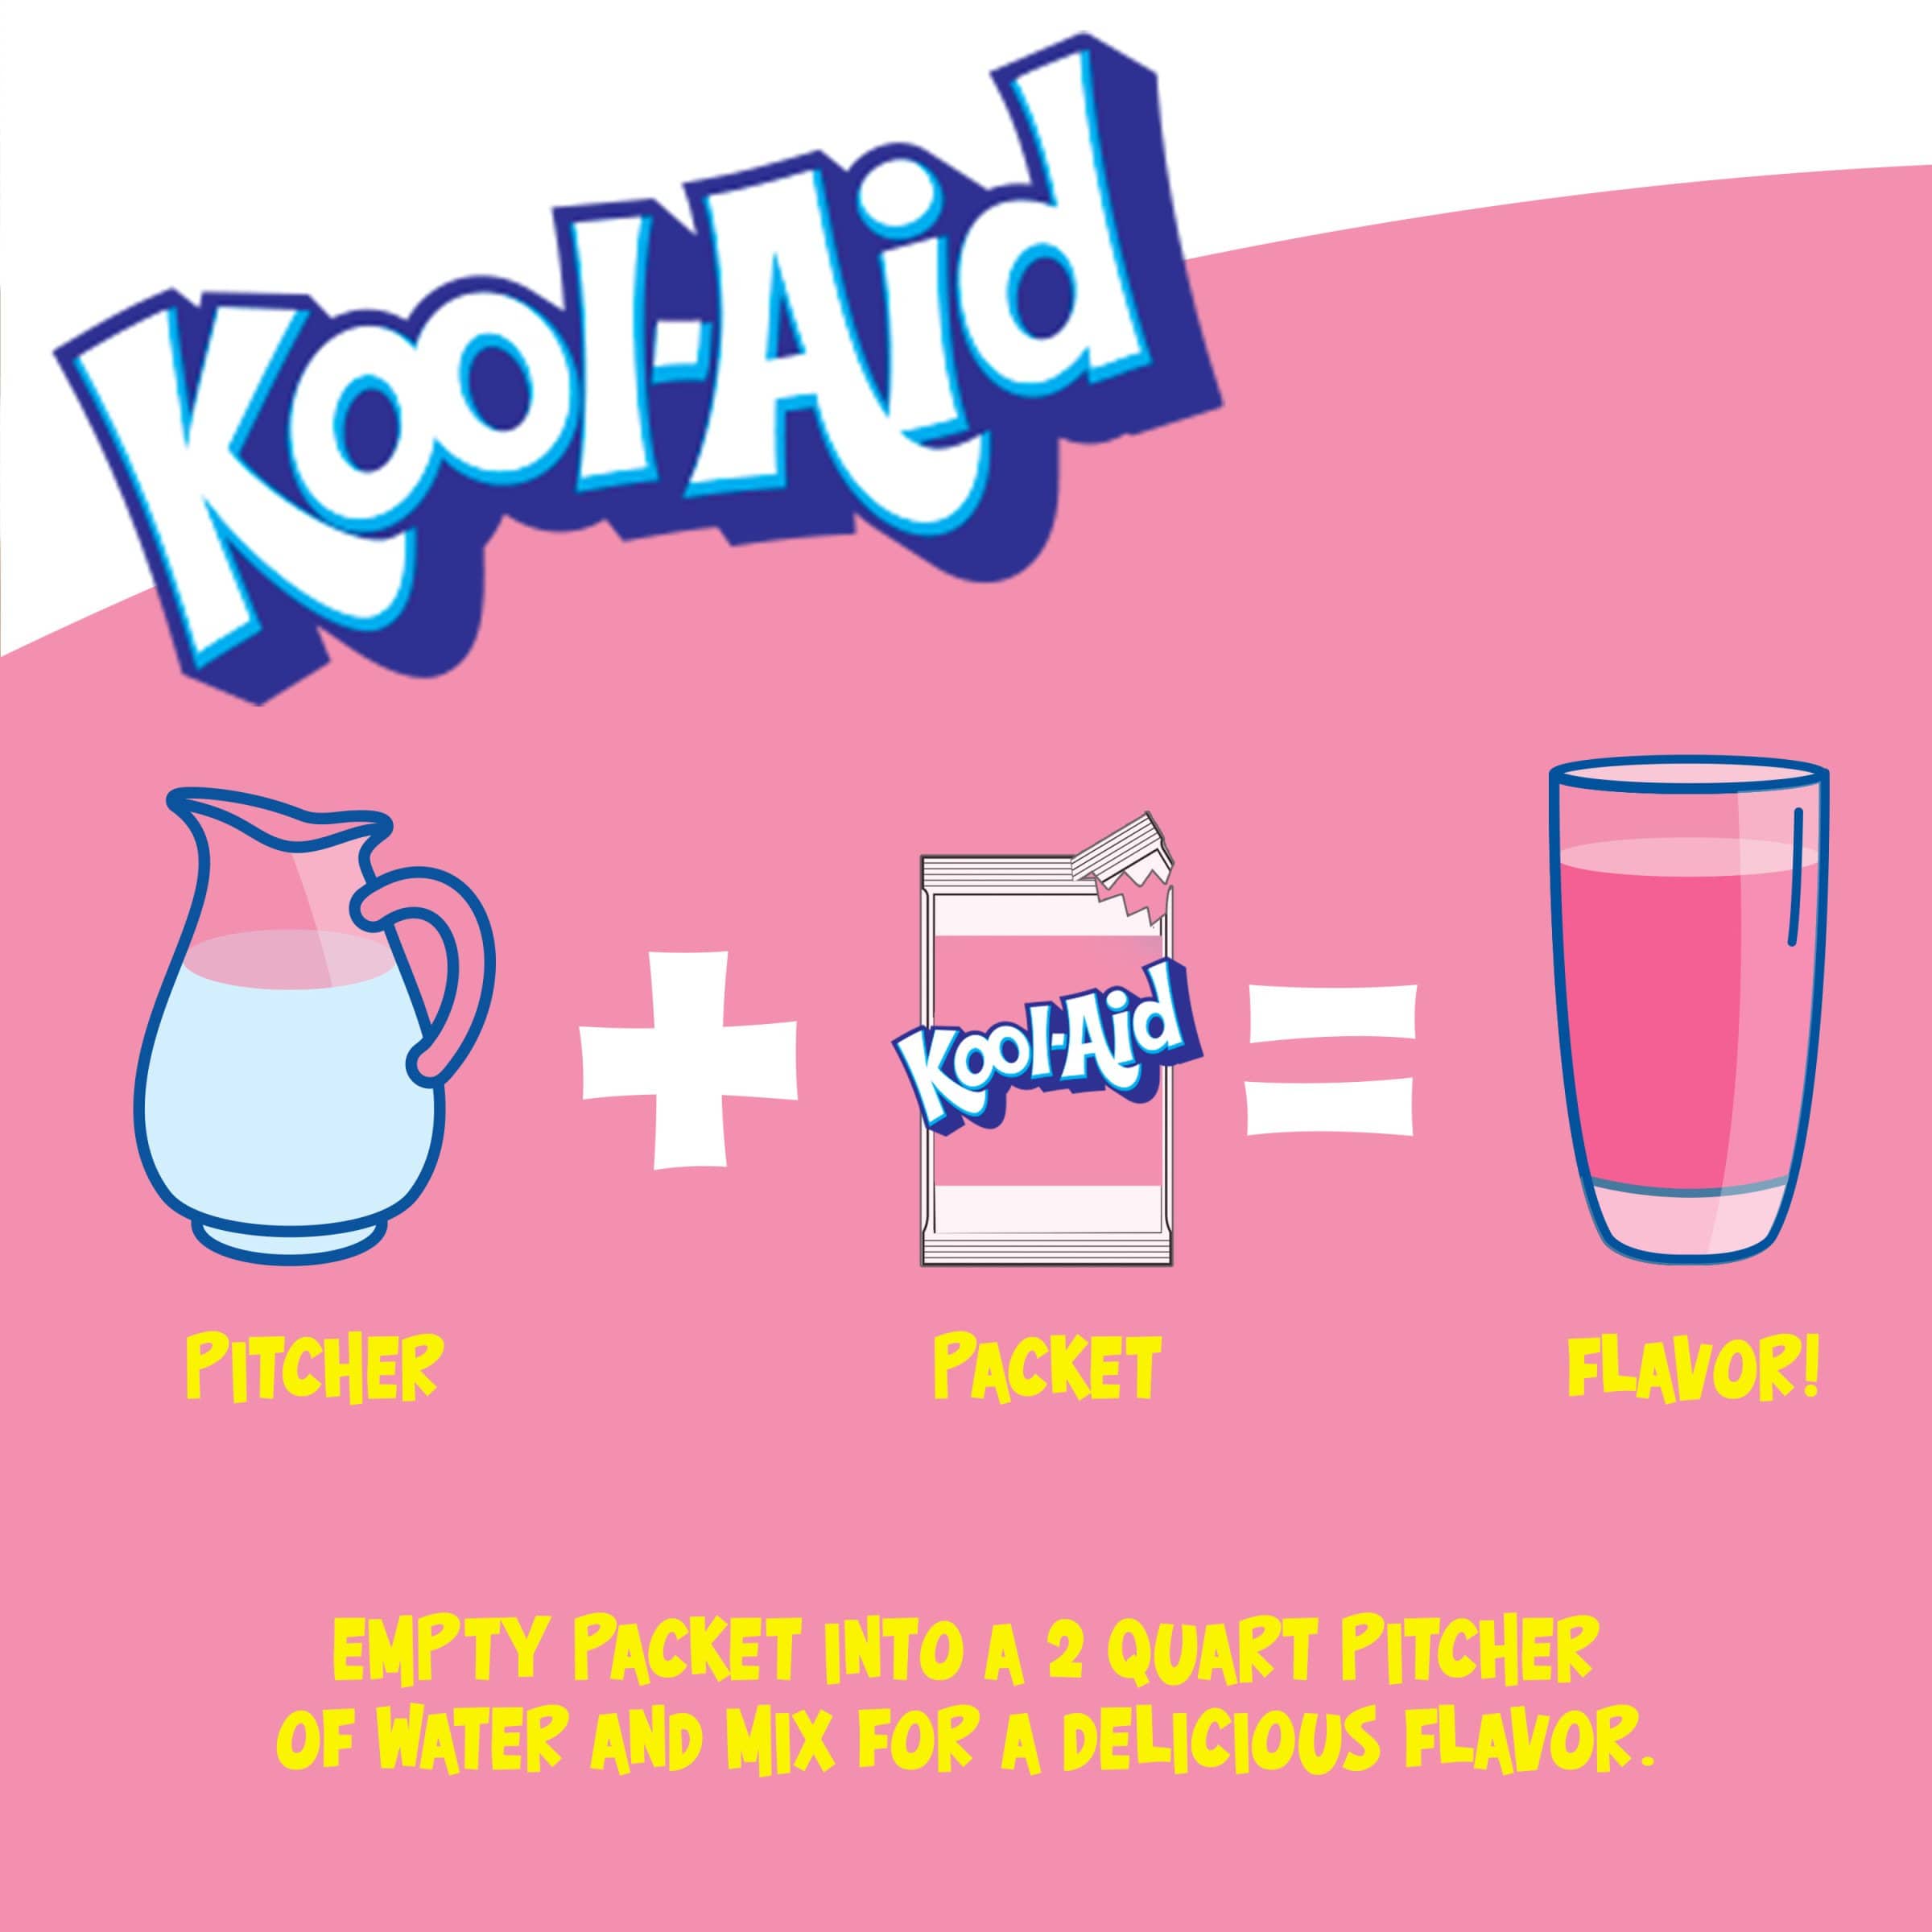 Une affiche blanc au-dessus et roses en-dessous avec une carafe blanche, un paquet de KoolAid et un verre rempli de boisson rose